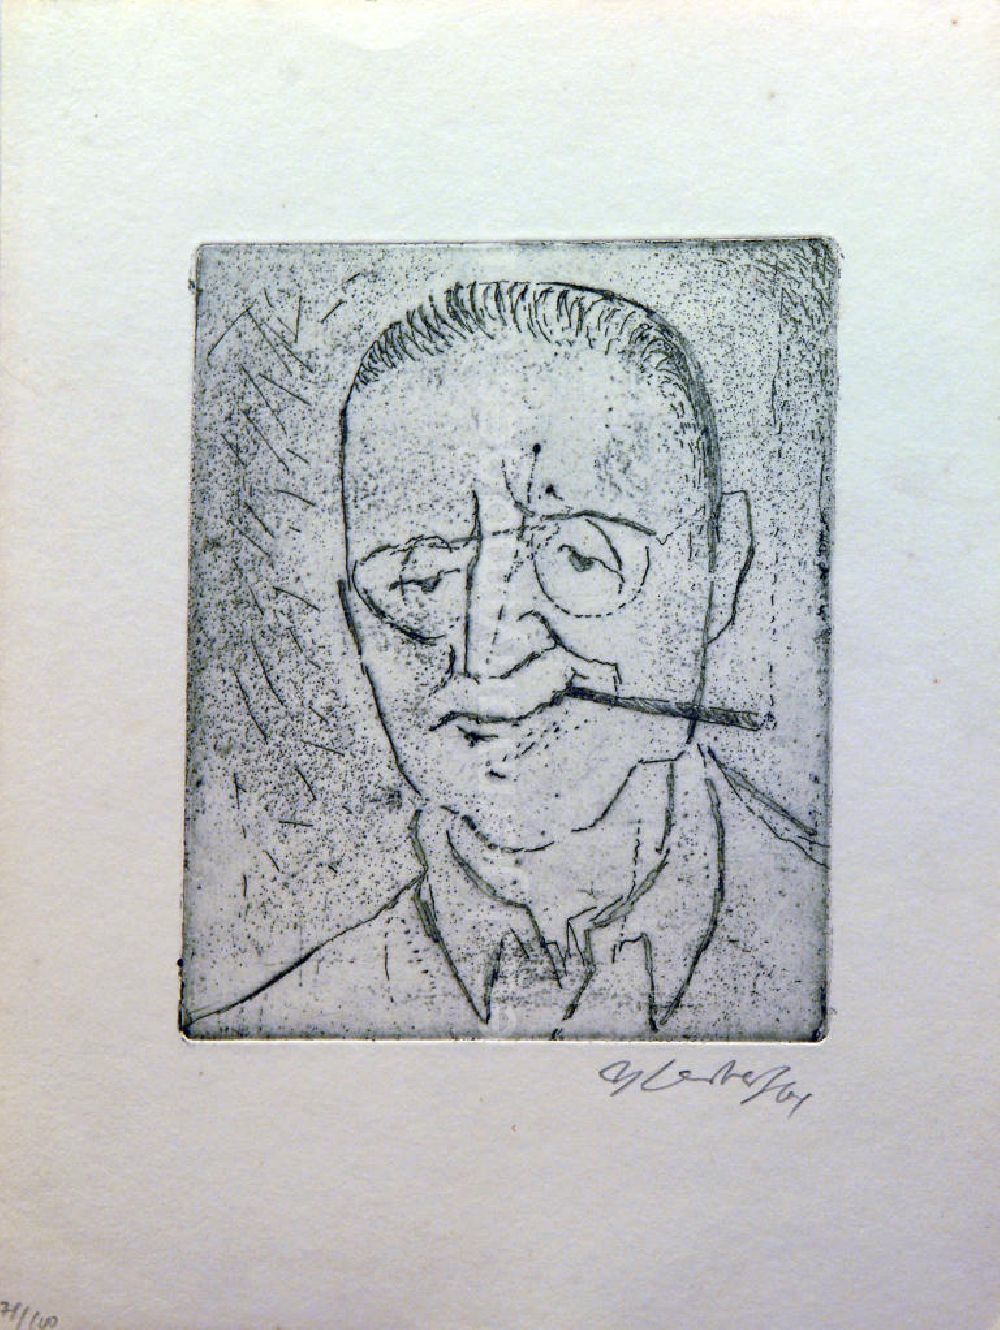 GDR picture archive: Berlin - Grafik von Herbert Sandberg über Bertolt Brecht (*10.02.1898 †14.08.1956) b.b. aus dem Jahr 1964 (Porträt mit Brille beim Rauchen) 14,8x12,2cm Radierung, handsigniert, 78/10